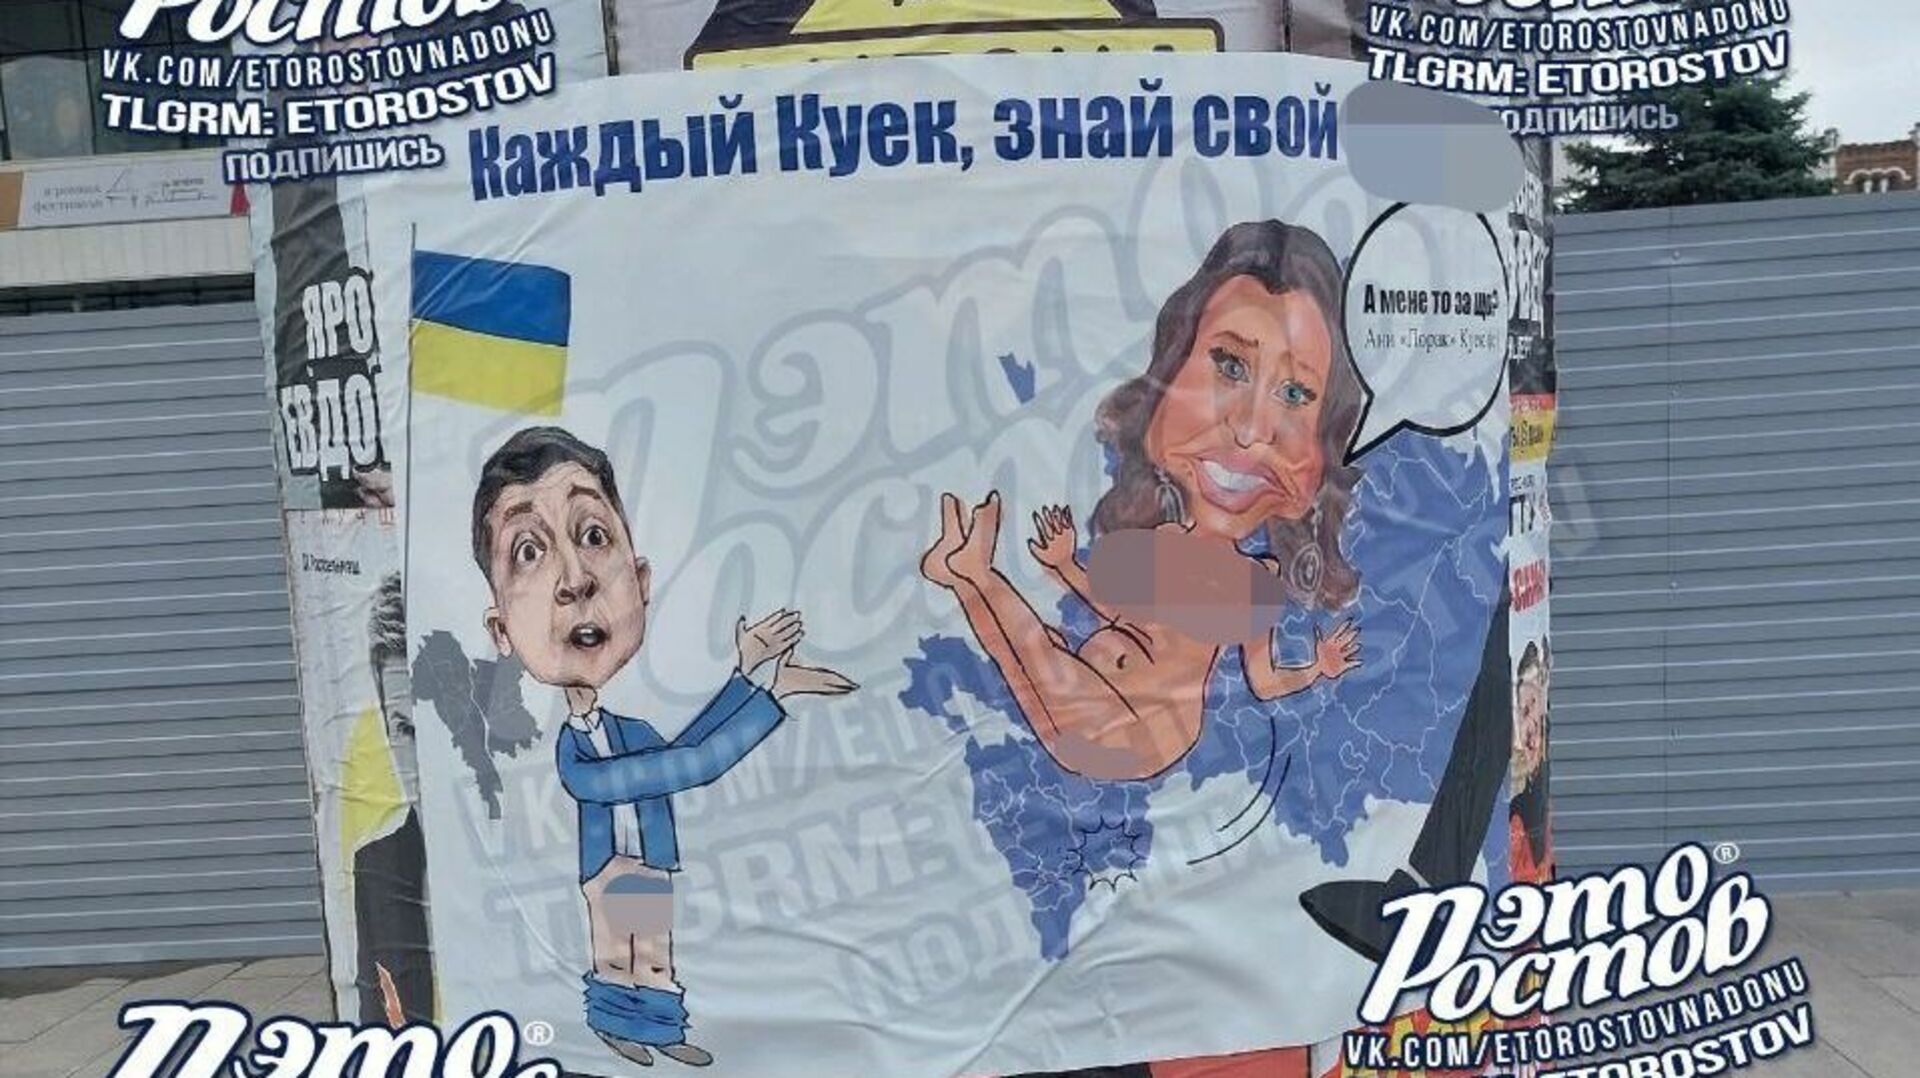 В Ростове неизвестные вывесили порнографический плакат, на котором изображены Зеленский и Лорак